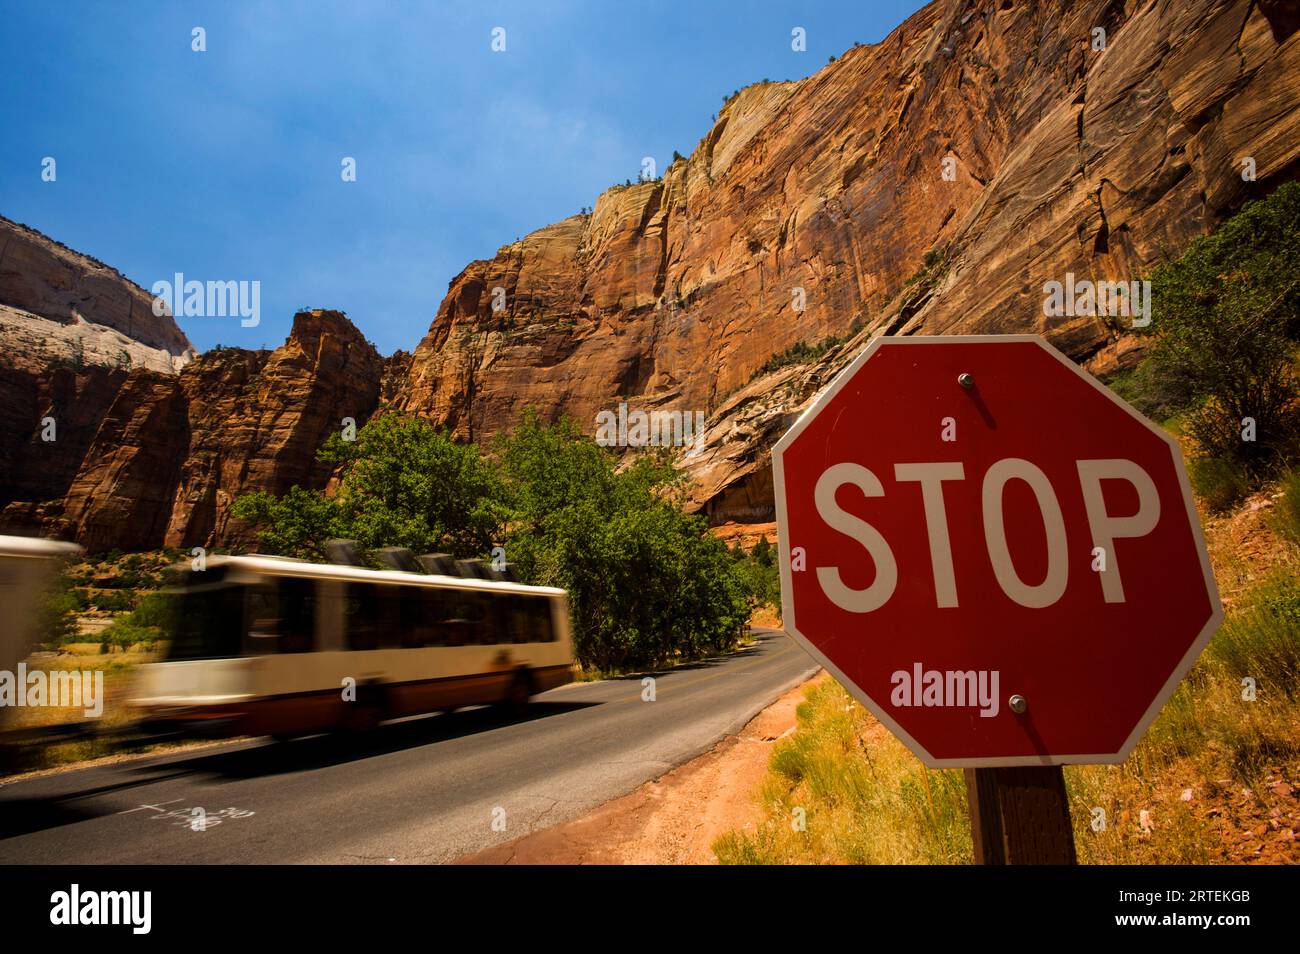 Propan-betriebener Shuttlebus passiert ein Stoppschild im Zion-Nationalpark; Utah, Vereinigte Staaten von Amerika Stockfoto